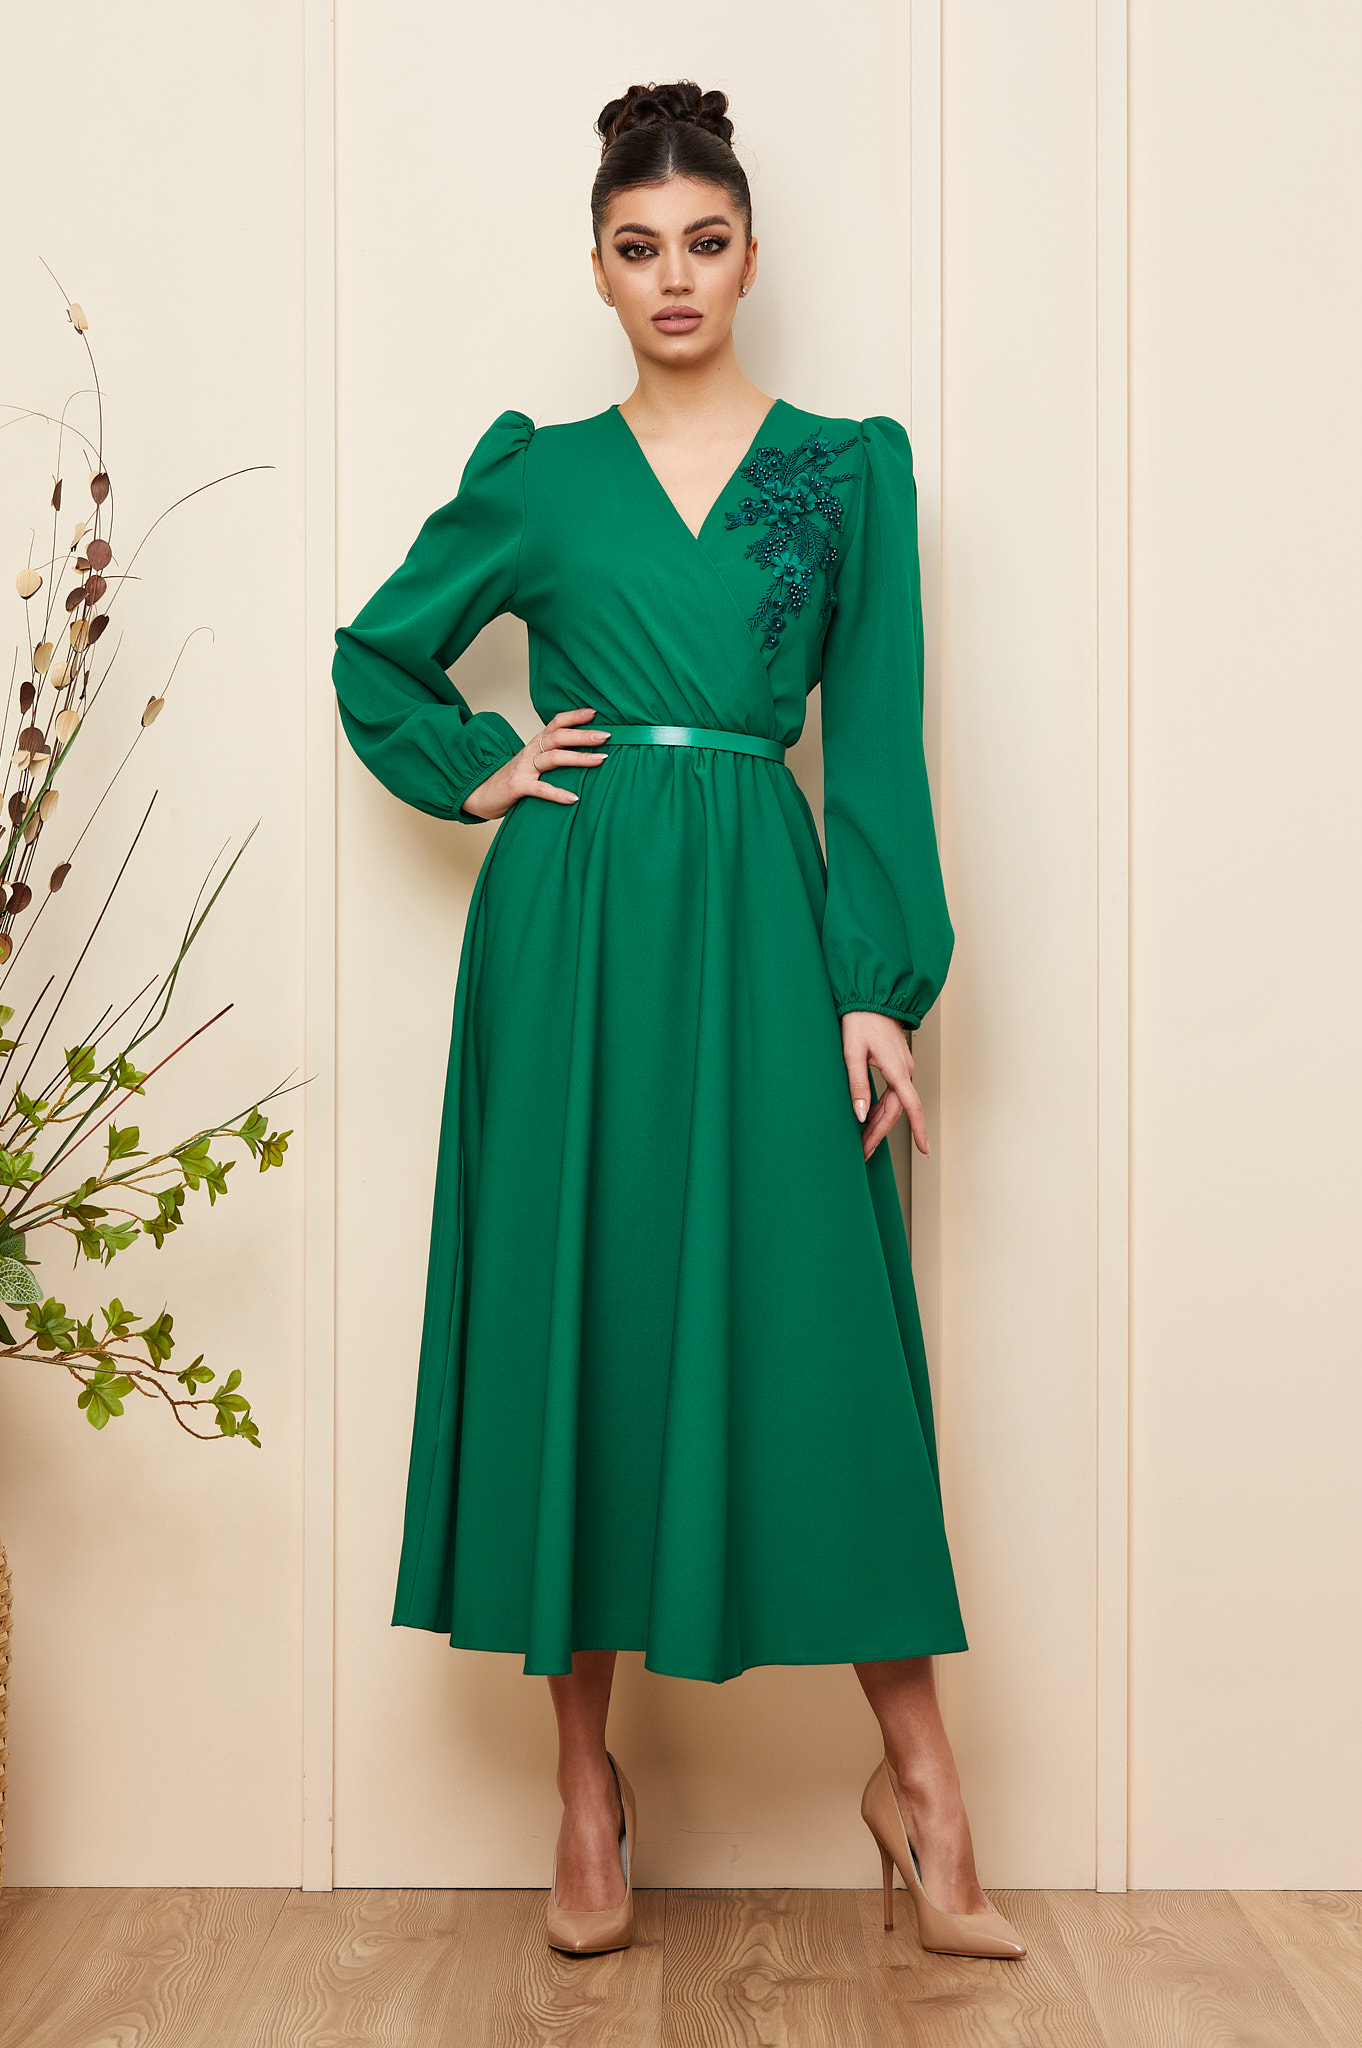 Rochie verde eleganta cu decolteu petrecut si maneci lungi accesorizata cu broderie